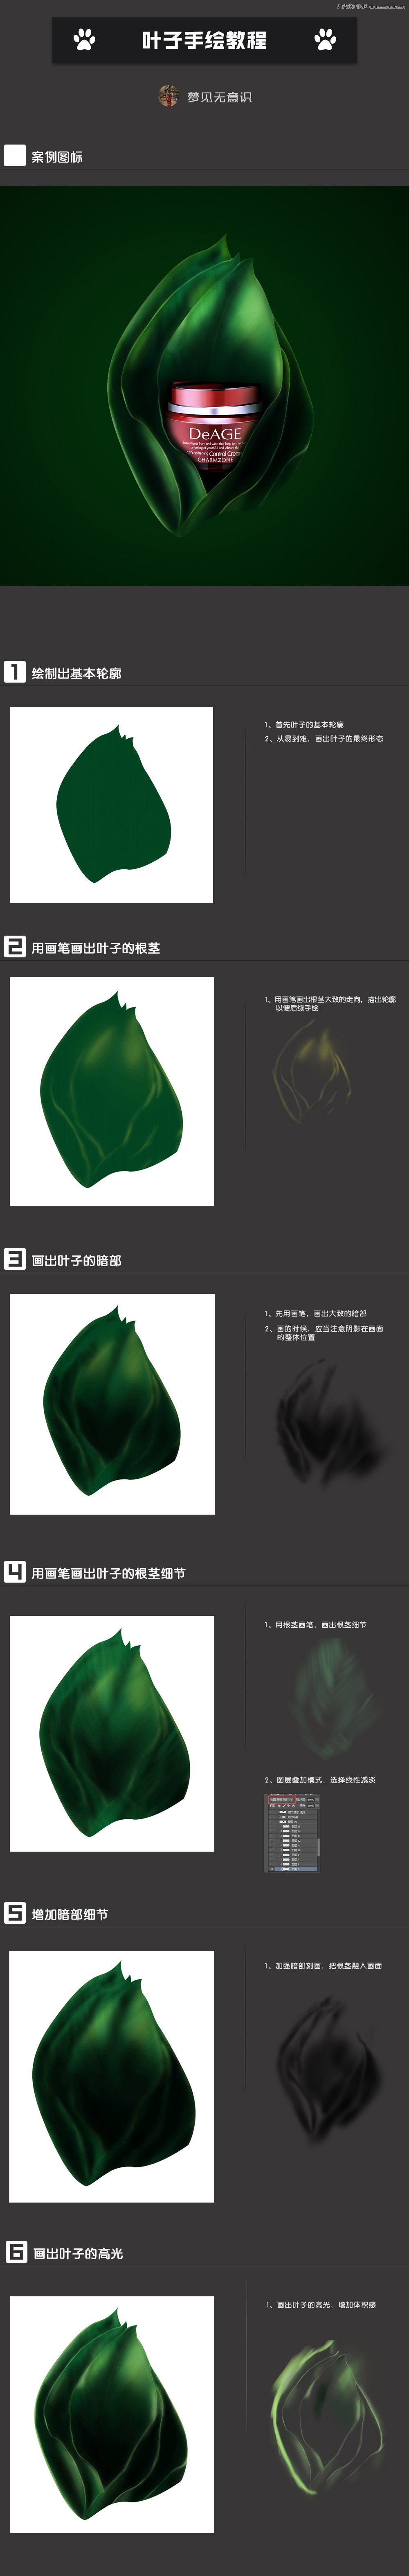 Photoshop绘制包装化妆品瓶子的立体绿叶,PS教程,素材中国网